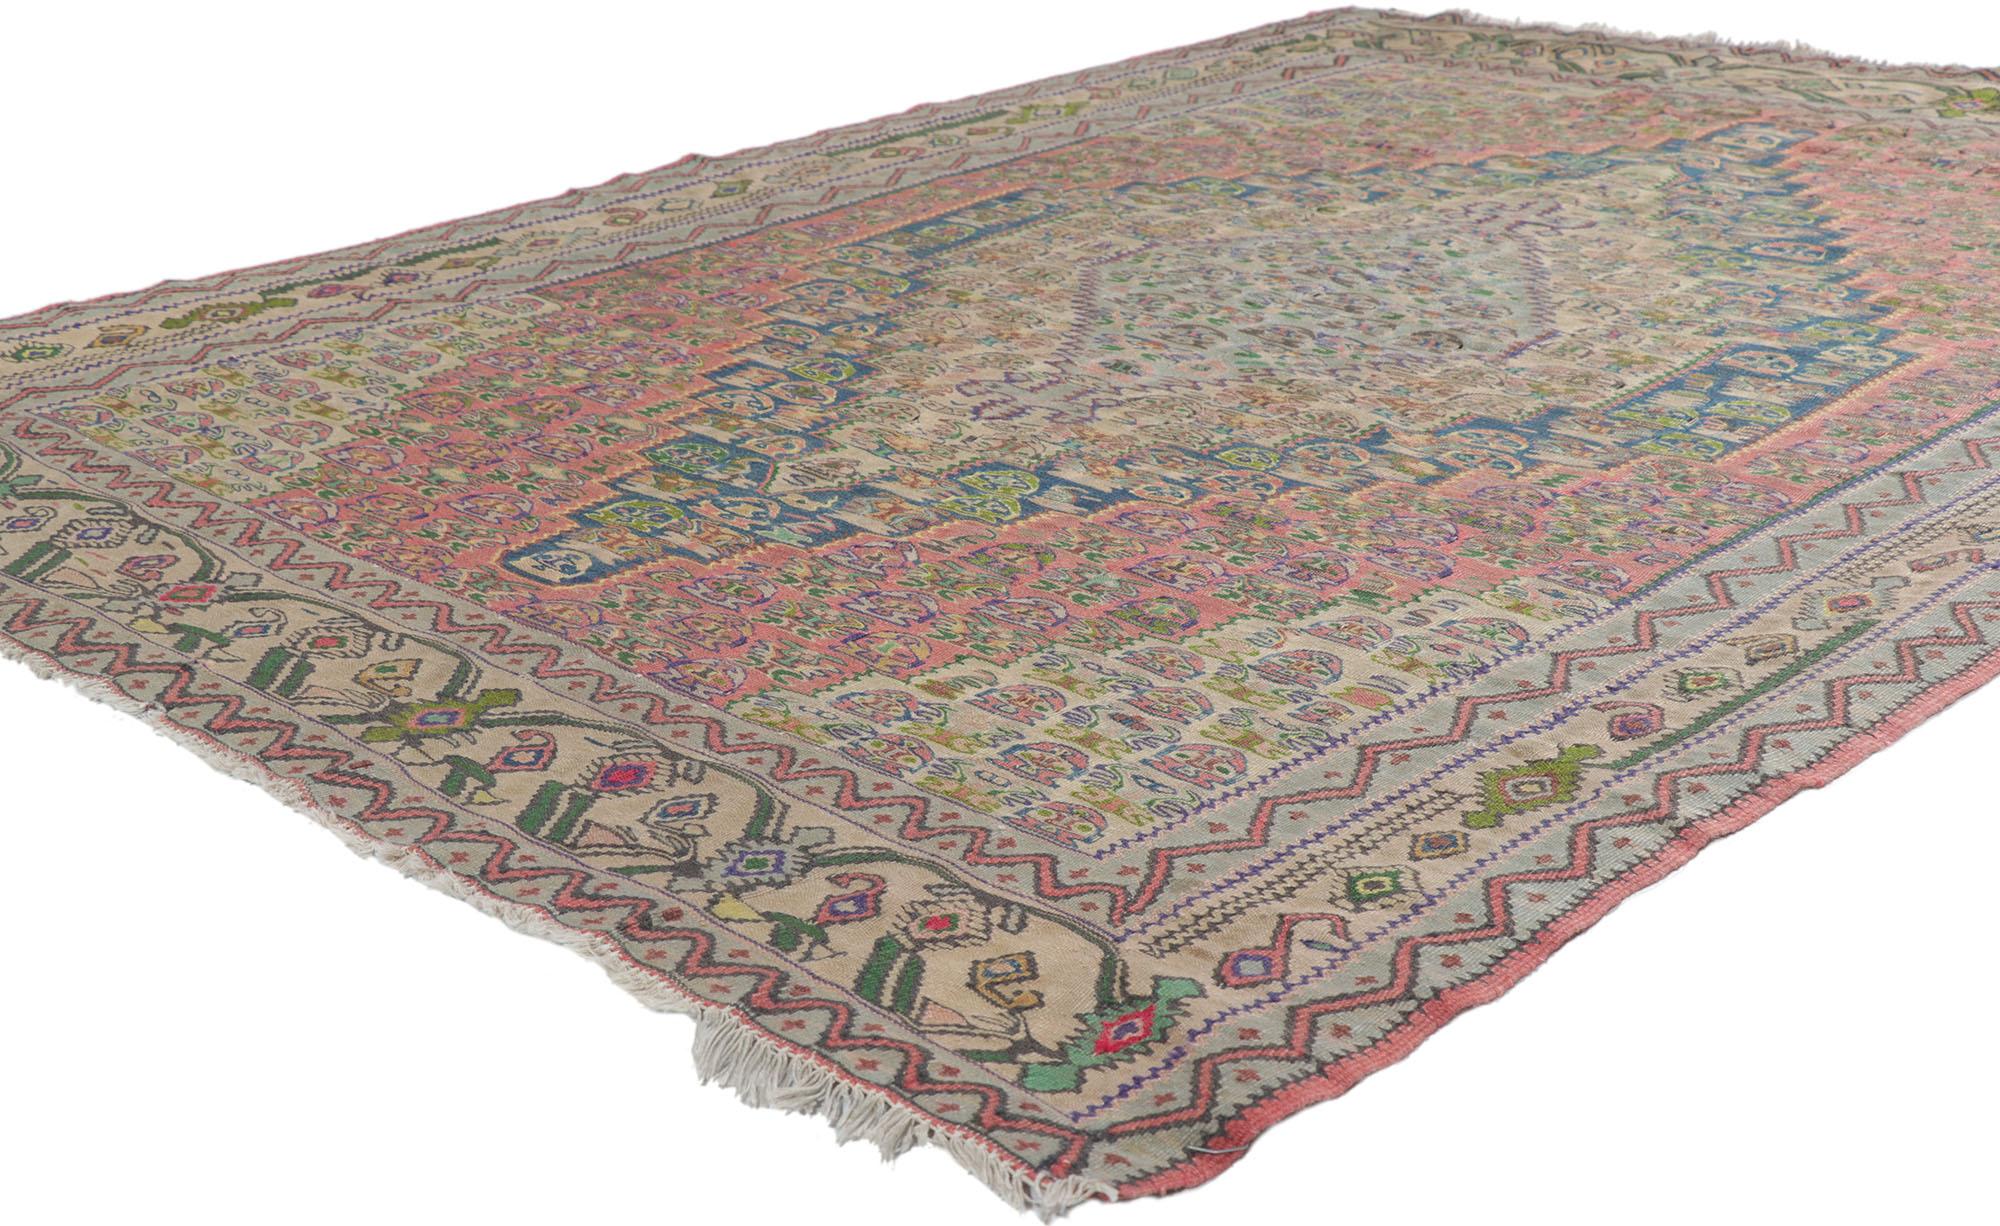 78213 Vintage Persian Bijar Kilim Teppich mit Landhausstil 4'10 x 6'00. Dieser handgewebte persische Bijar-Kelim-Teppich aus Wolle ist von müheloser Schönheit und Schlichtheit und vermittelt mit seinem bukolischen Charme ein lebendiges und